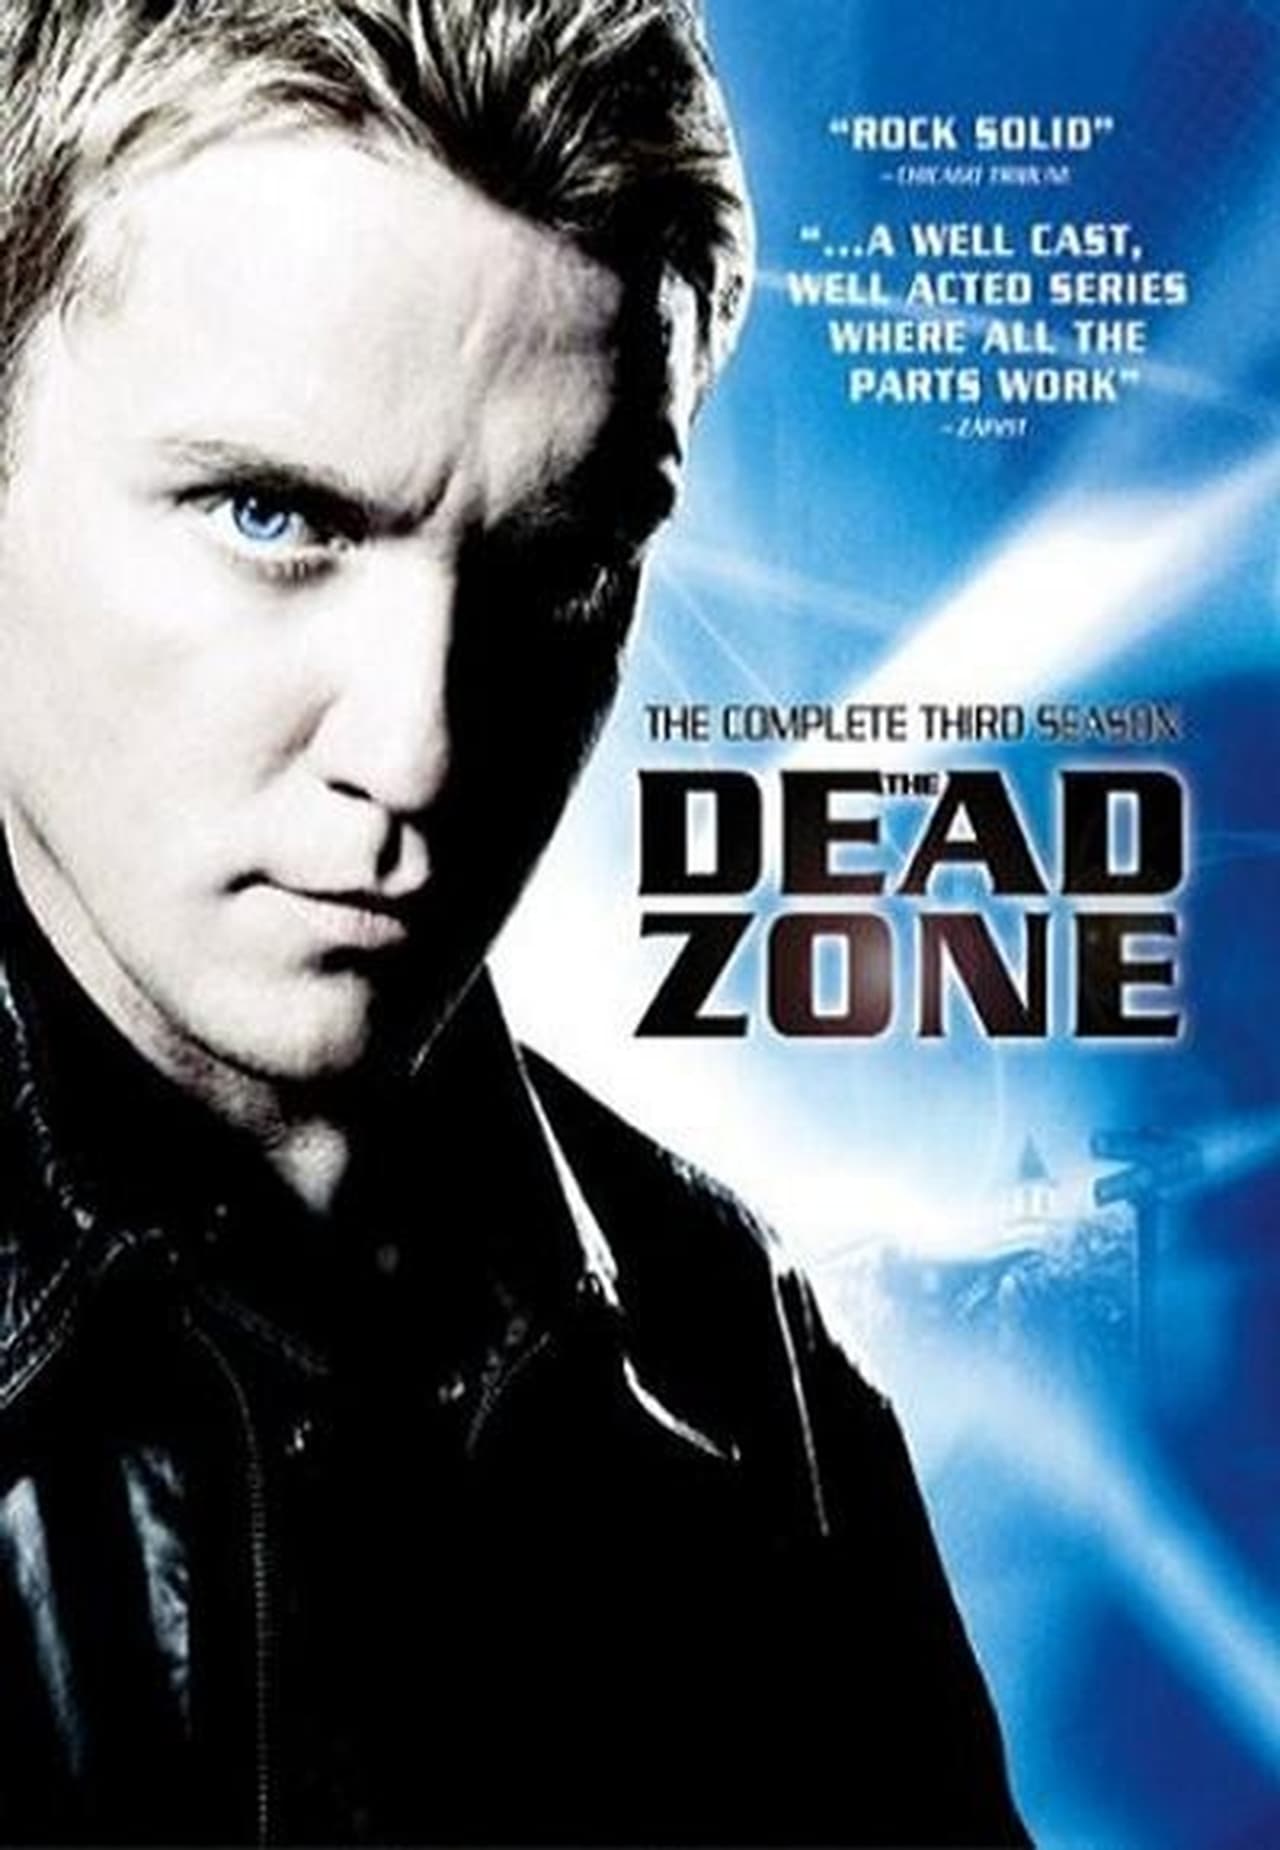 The Dead Zone (2004)